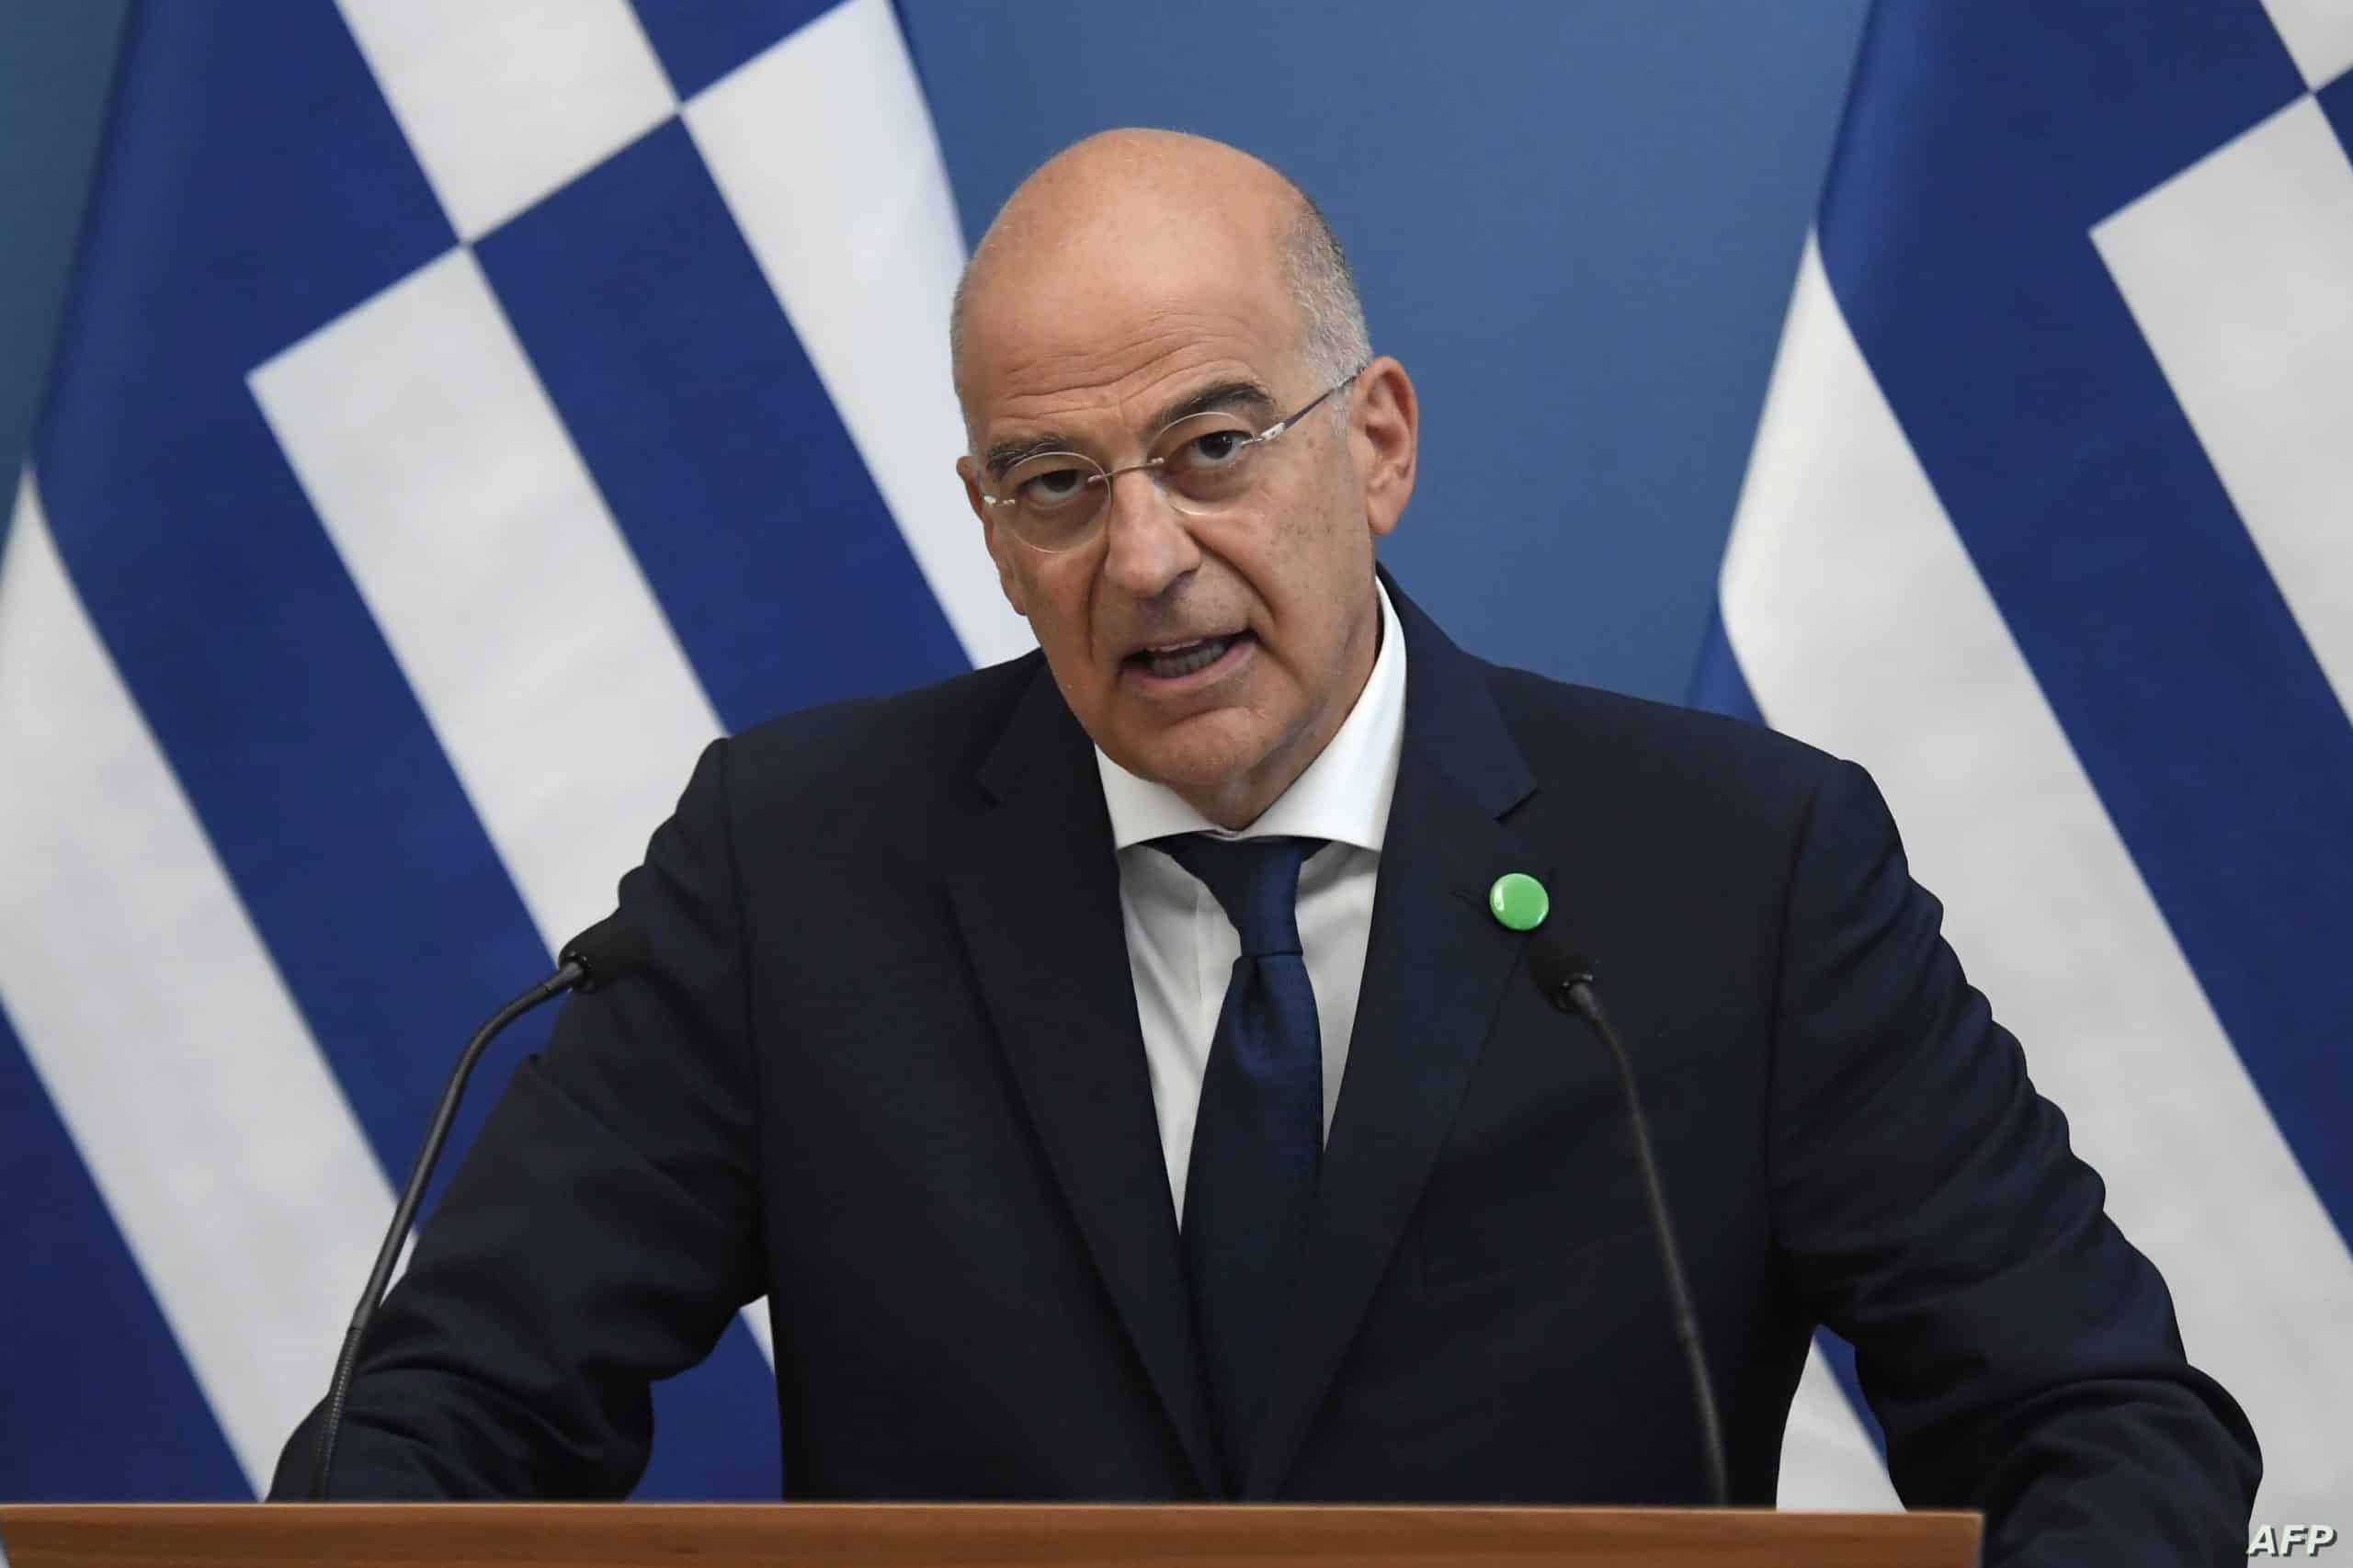 وزير خارجية اليونان حول إلغاء زيارته لطرابلس: المسألة رمزية